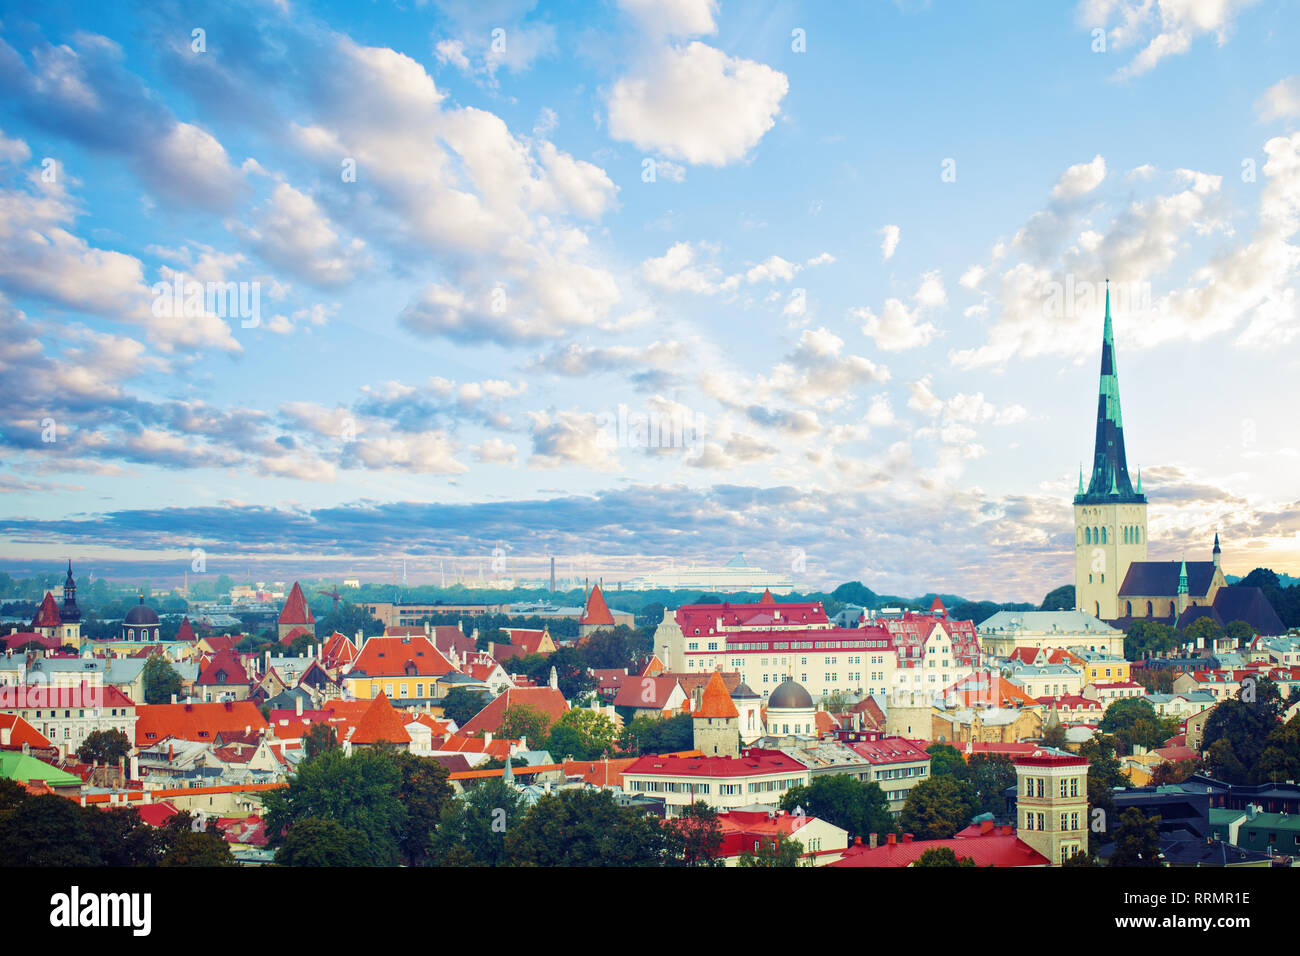 Vista aerea della città vecchia di Tallinn in una bella giornata d'estate. Cityscape skyline di pietra miliare di Tallinn, Estonia. Città Vecchia medievale, San Olaf Chiesa Battista, Foto Stock